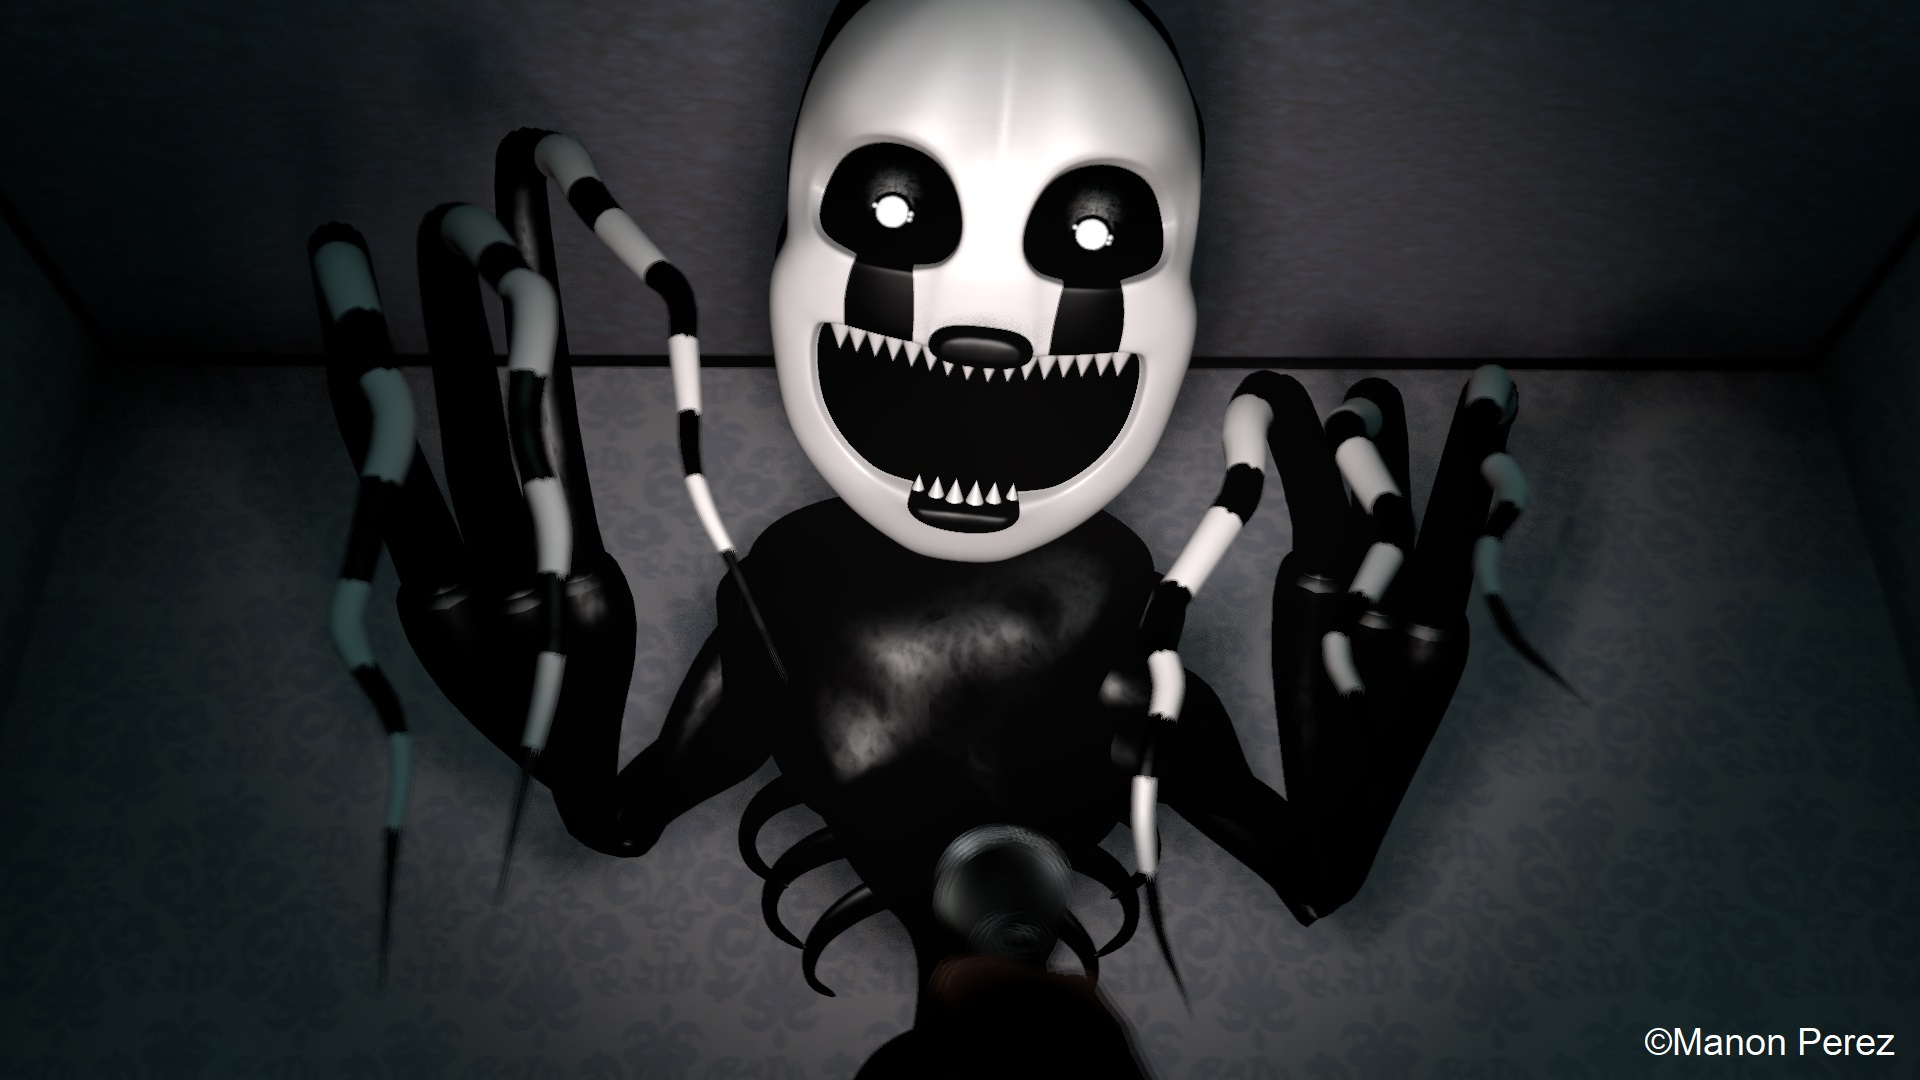 Nightmare Puppet 